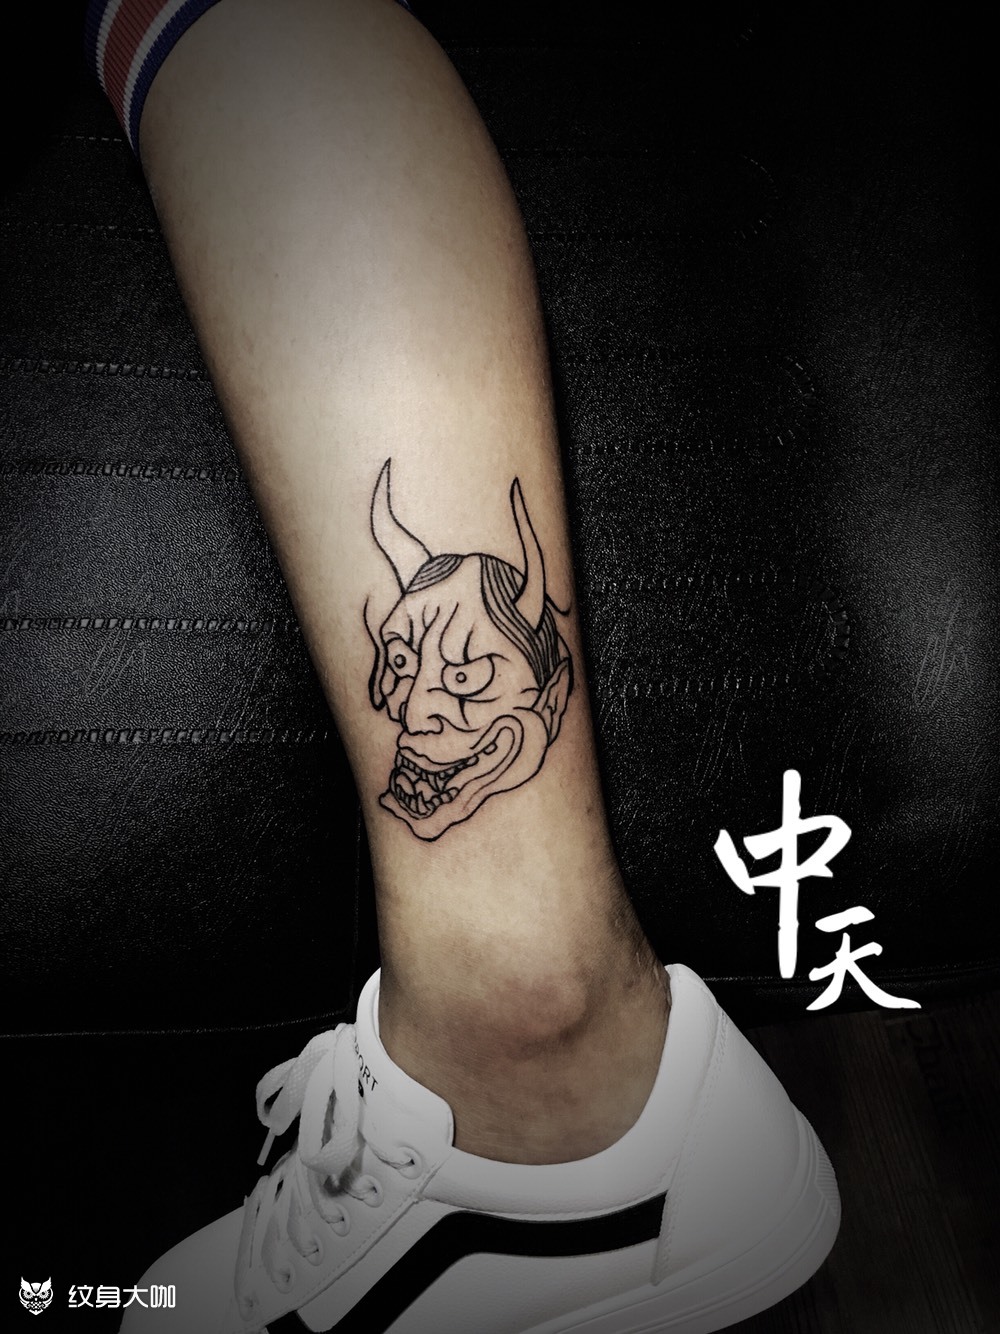 般若纹身_纹身图案手稿图片_刺丶珂洛的纹身作品集